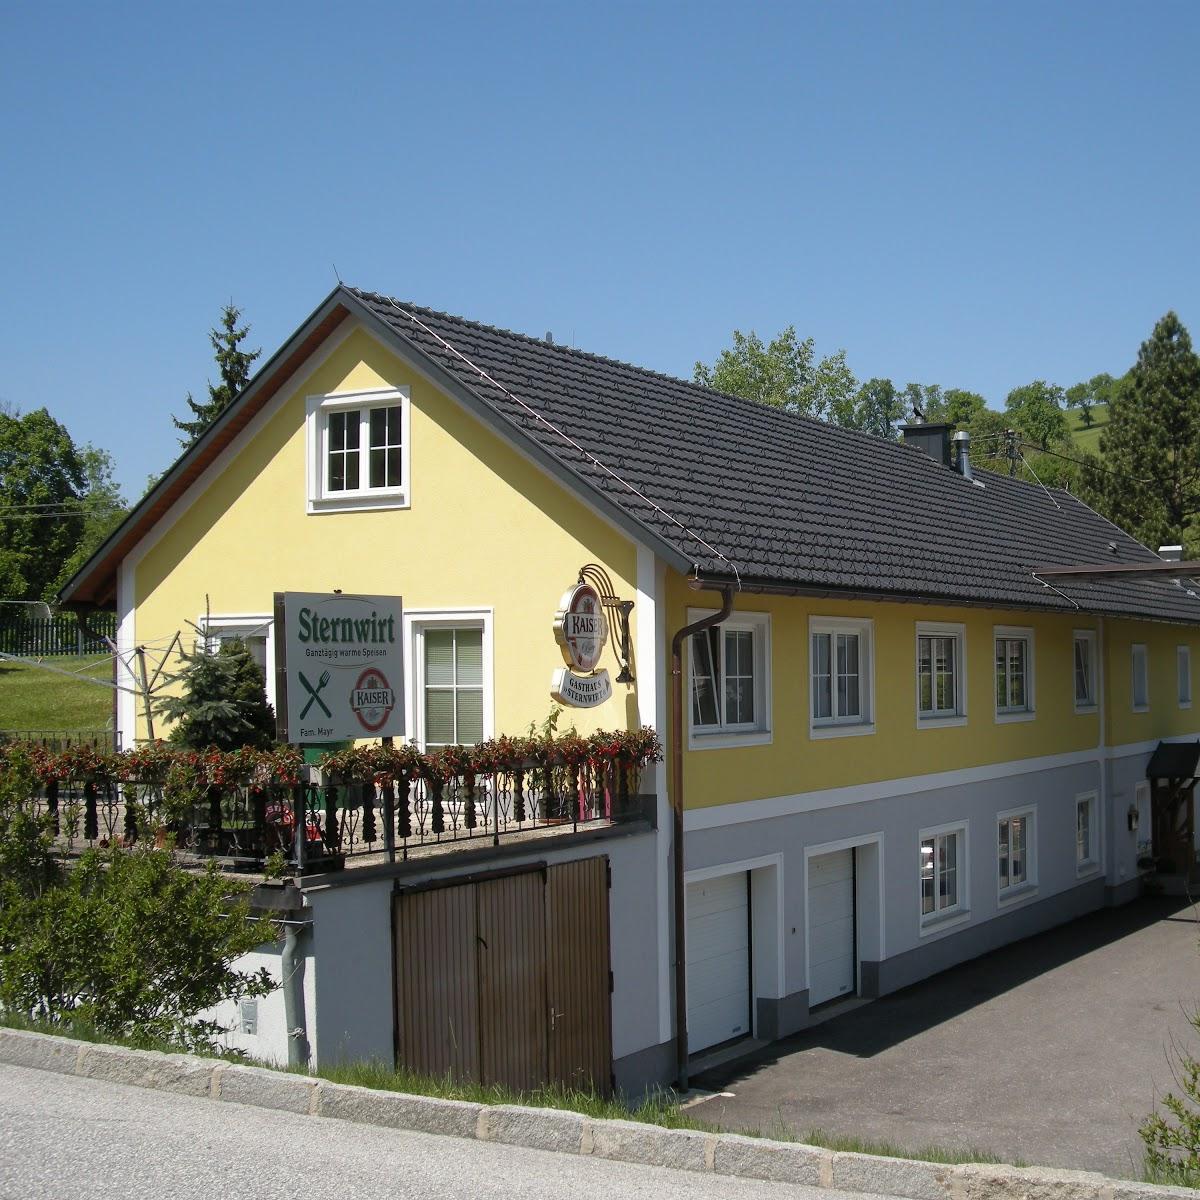 Restaurant "Gasthaus Sternwirt" in Ternberg